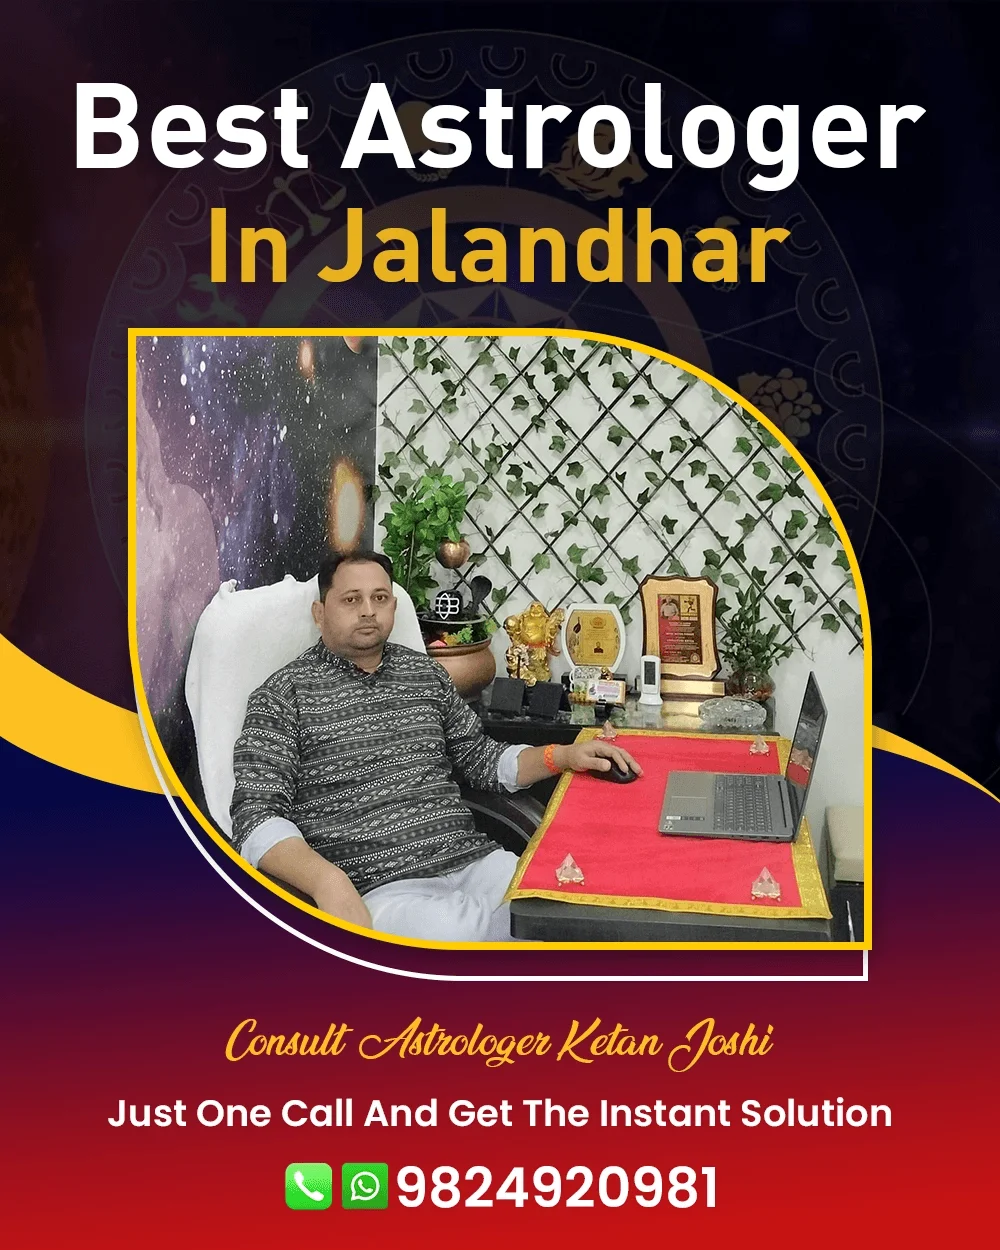 Best Astrologer In Jalandhar